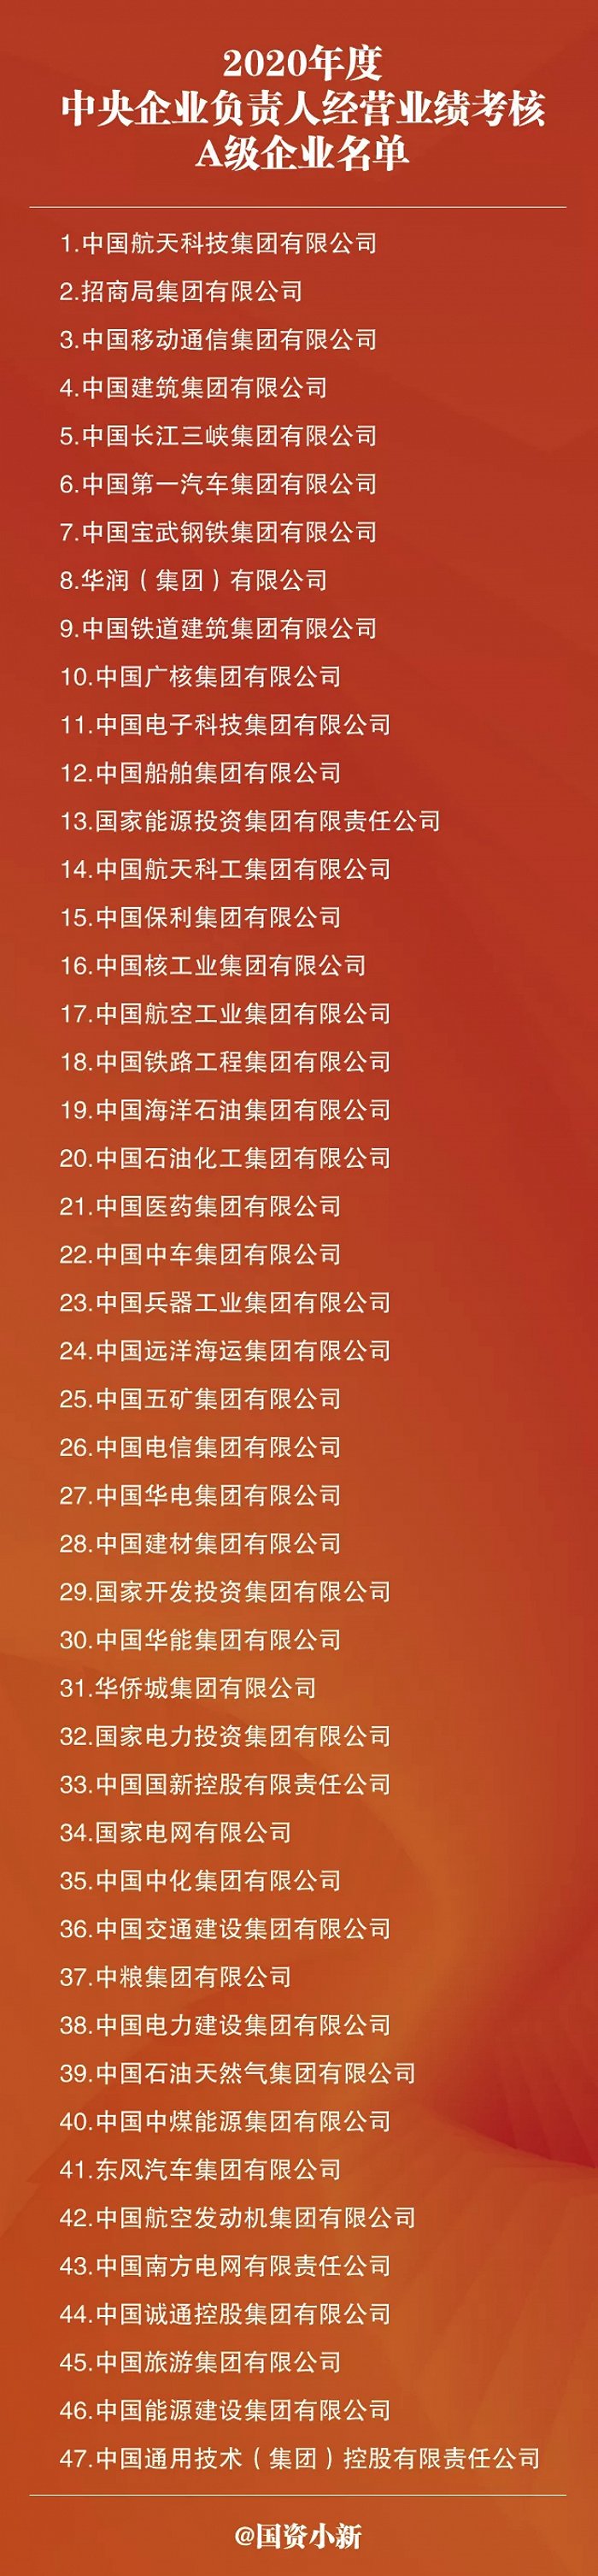 2020年度央企负责人经营业绩考核A级企业名单公布 中国移动等47家央企上榜